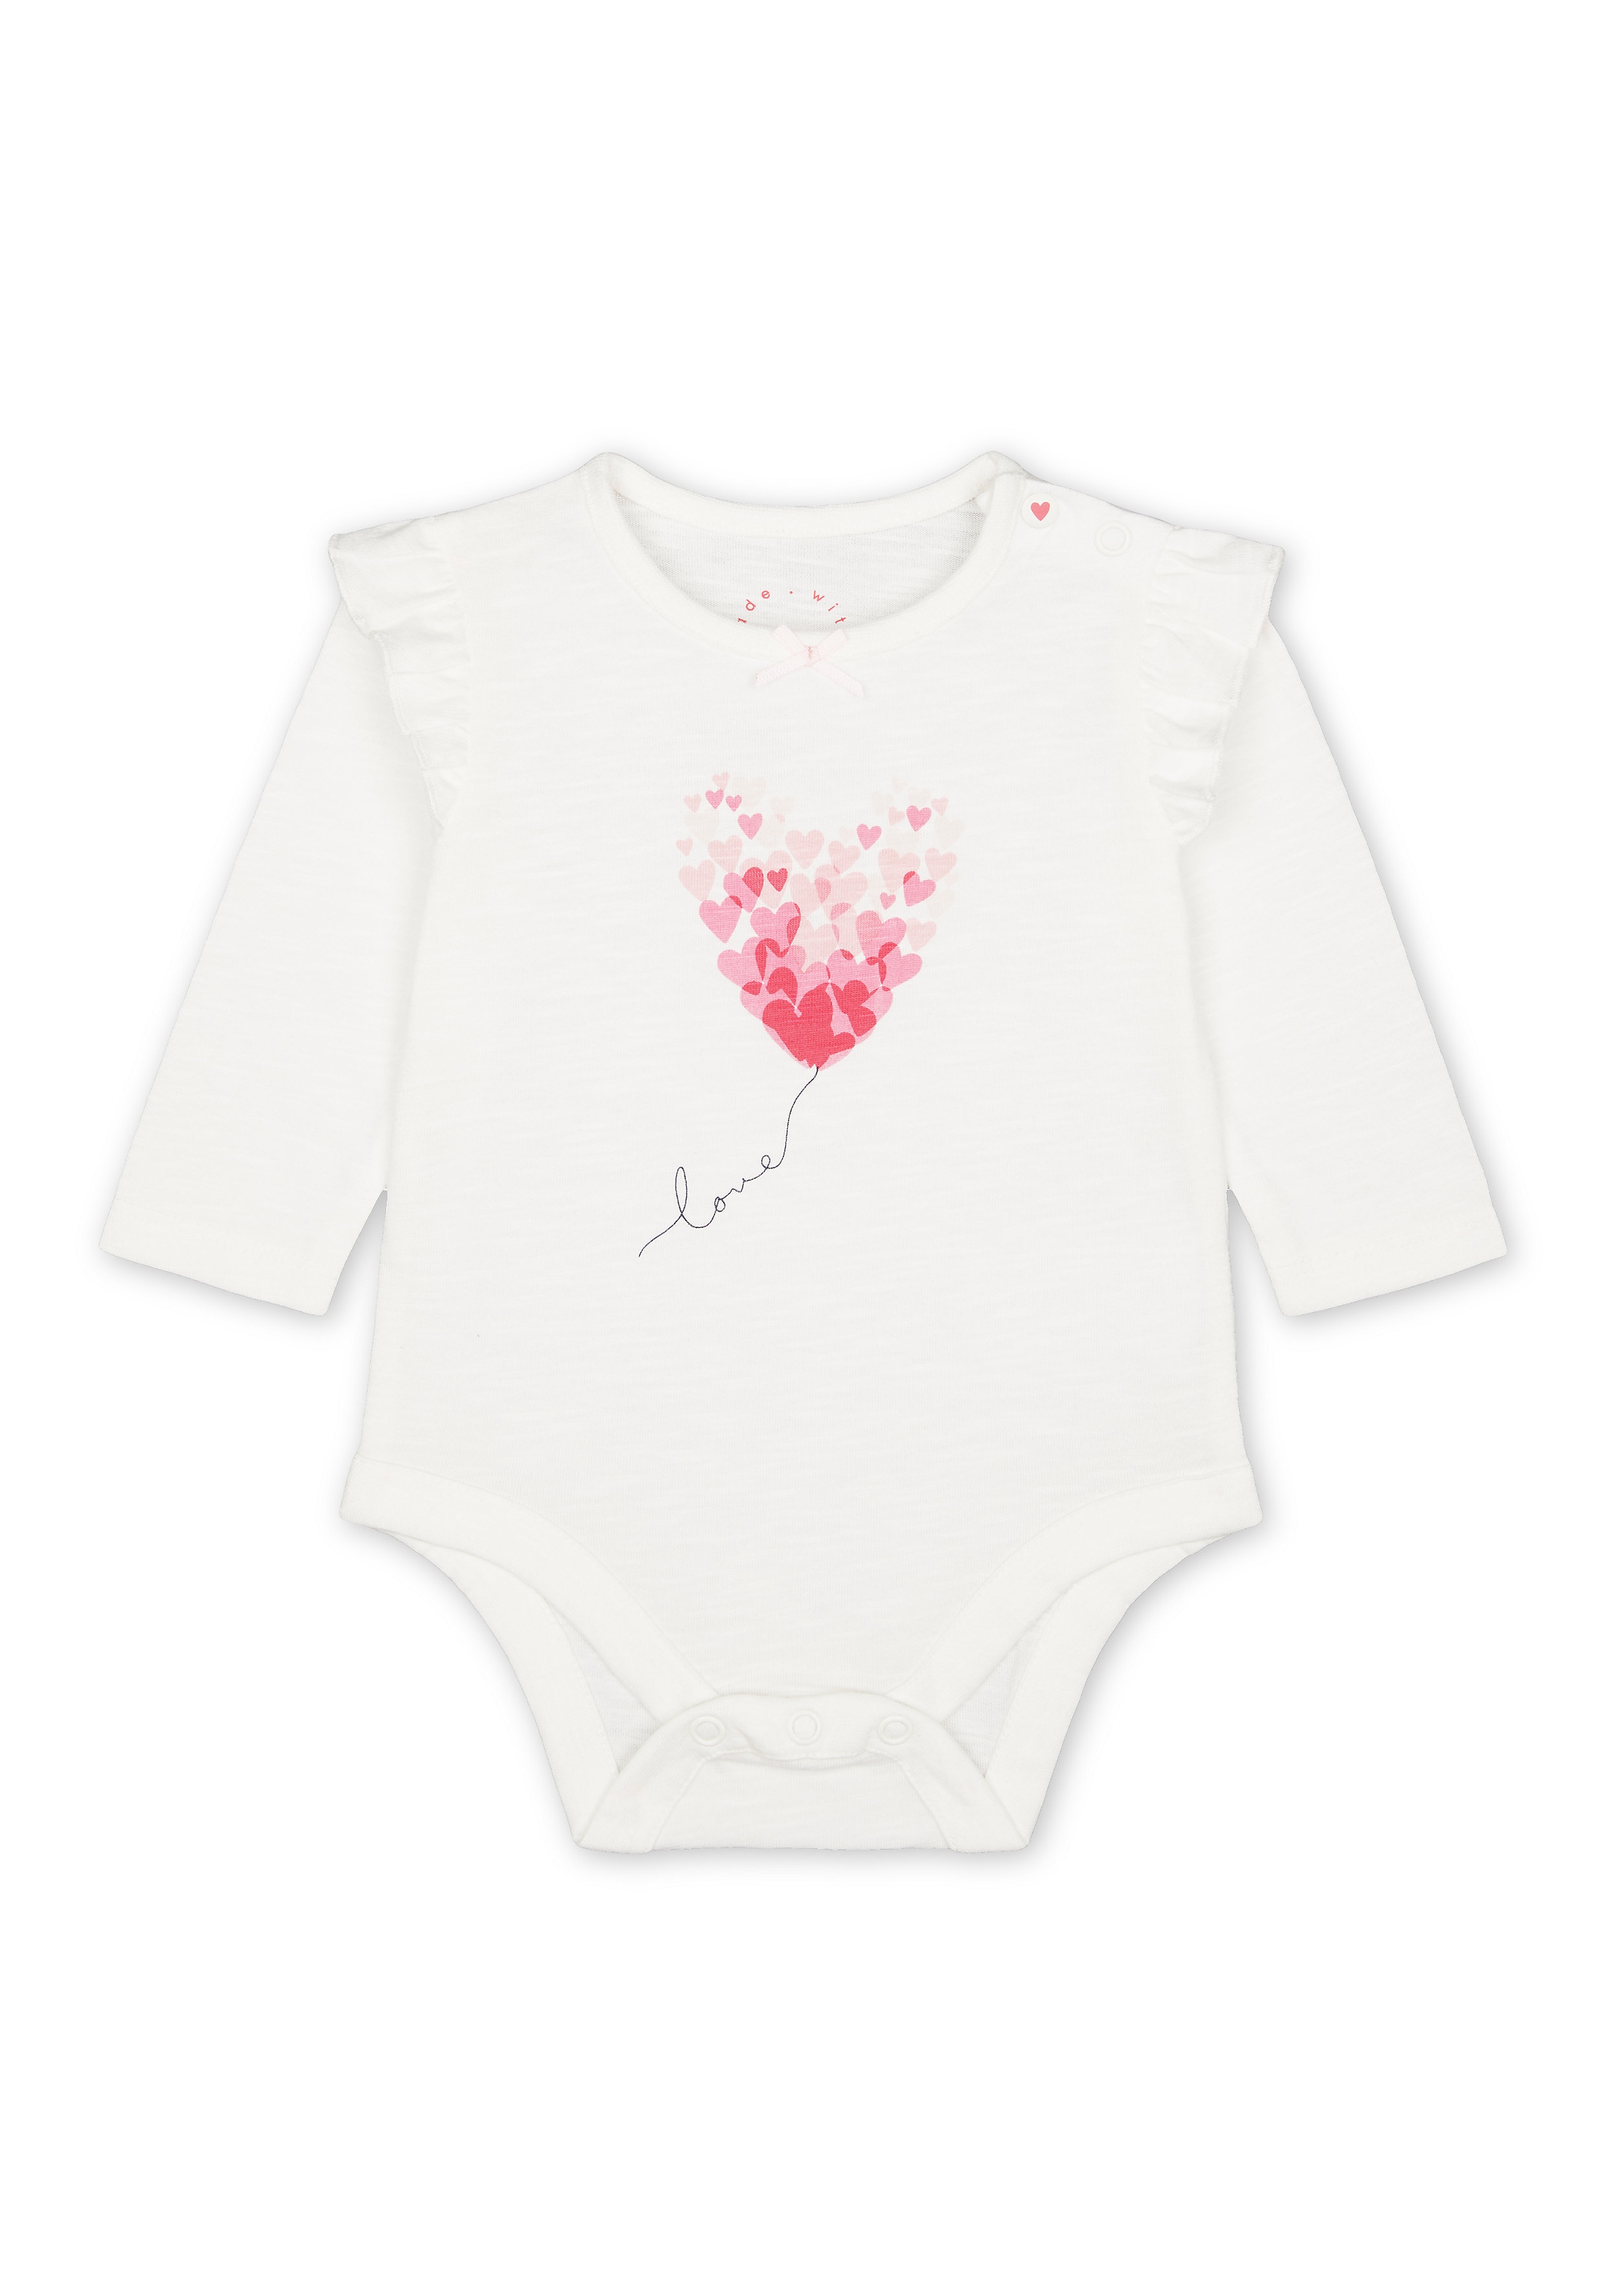 Mothercare | Girls Full Sleeves Heart Print Bodysuit - White